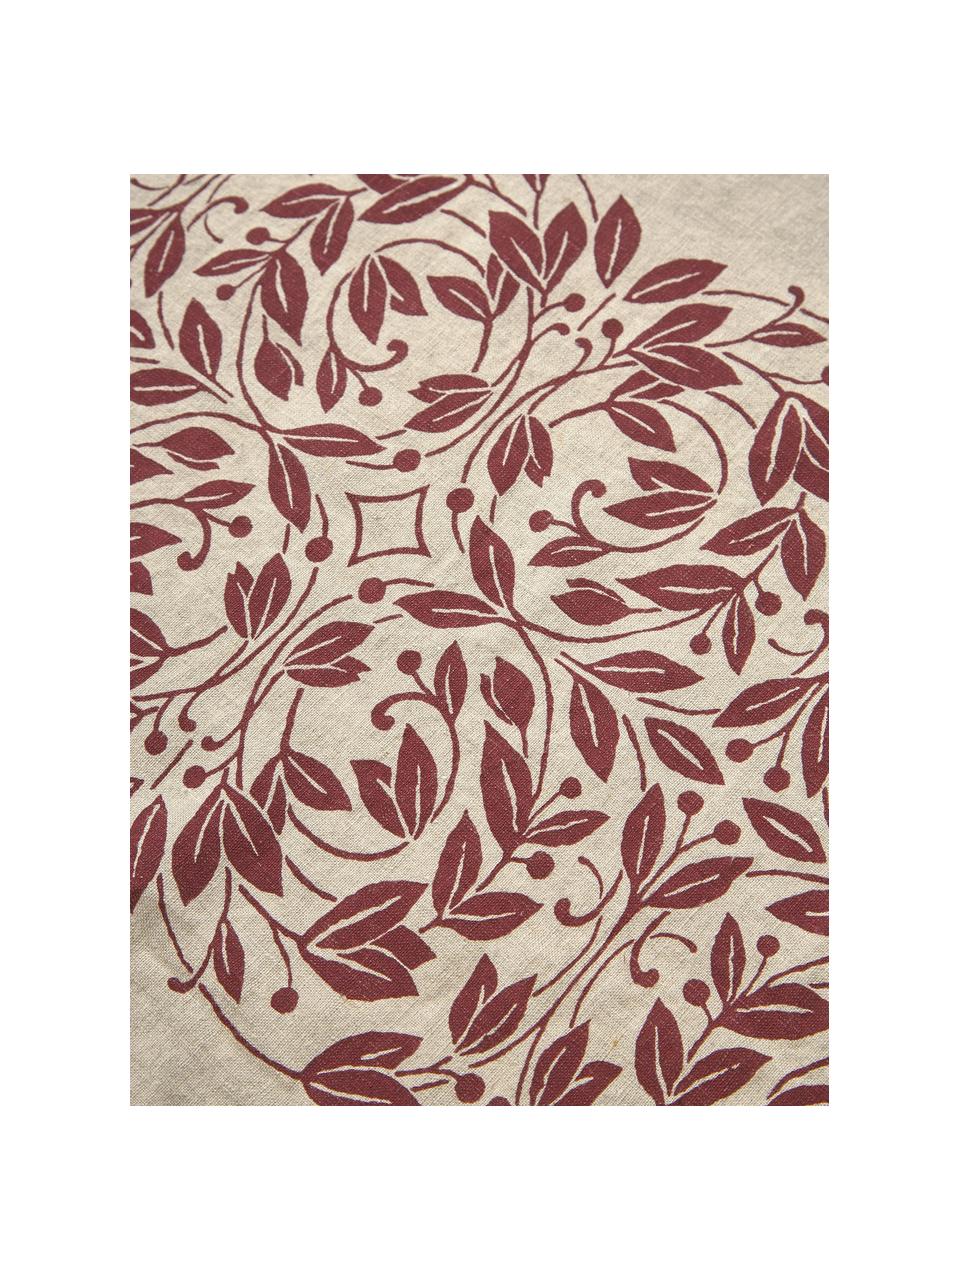 Linnen tafelkleed Matilda met bloemenpatroon, 100% linnen, Wijnrood, beige, Voor 6 - 10 personen (B 150 x L 250 cm)